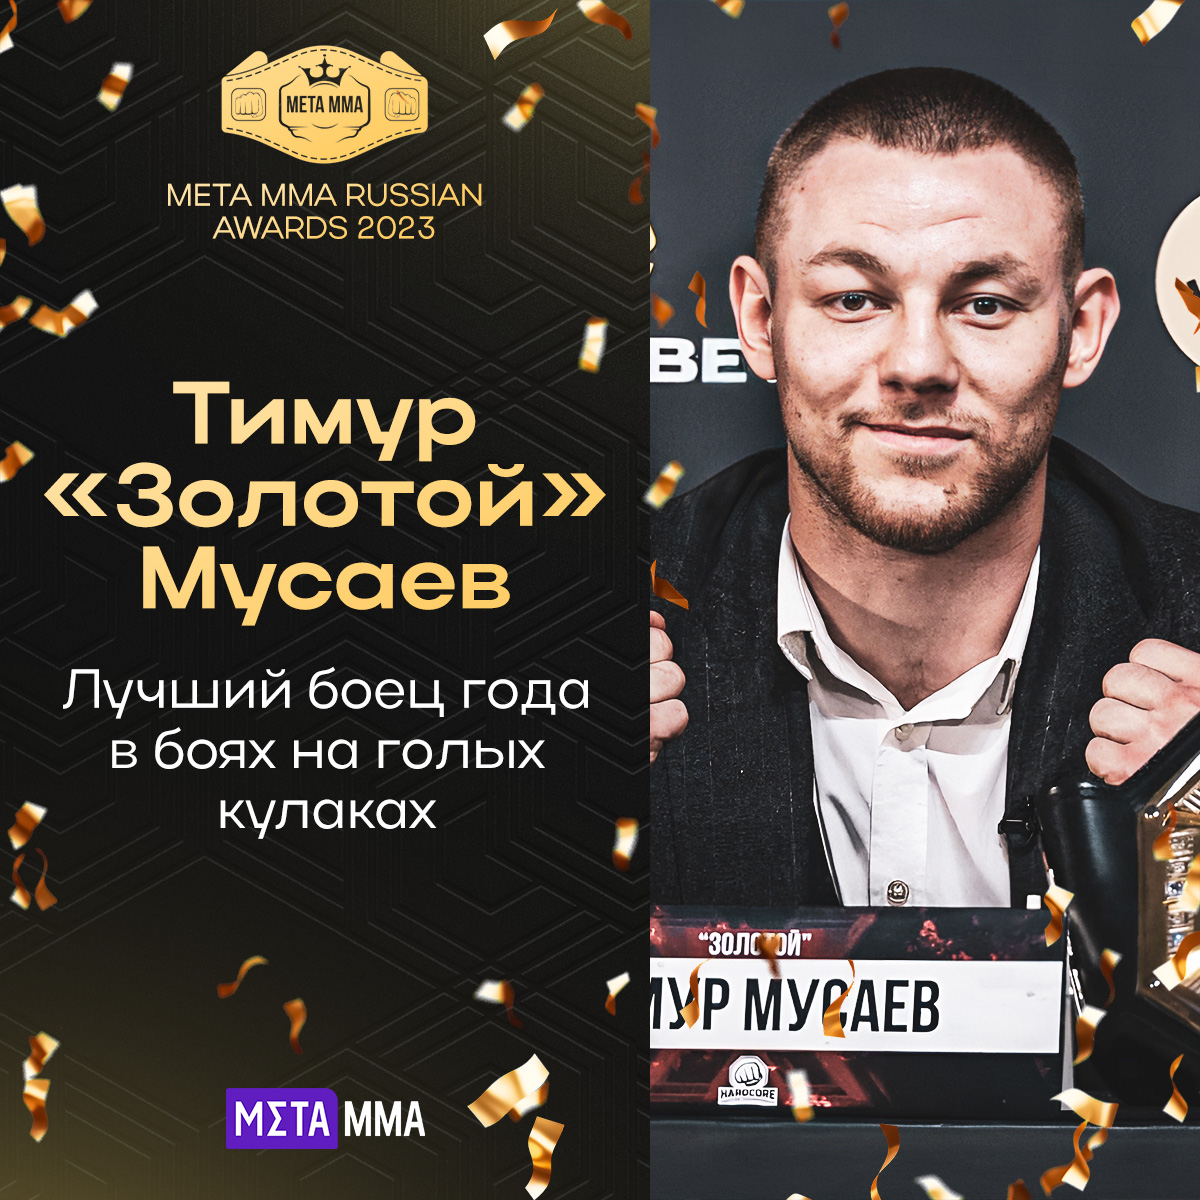 Тимур Мусаев: лучший кулачный боец 2023 года по версии MMA.Metaratings.ru